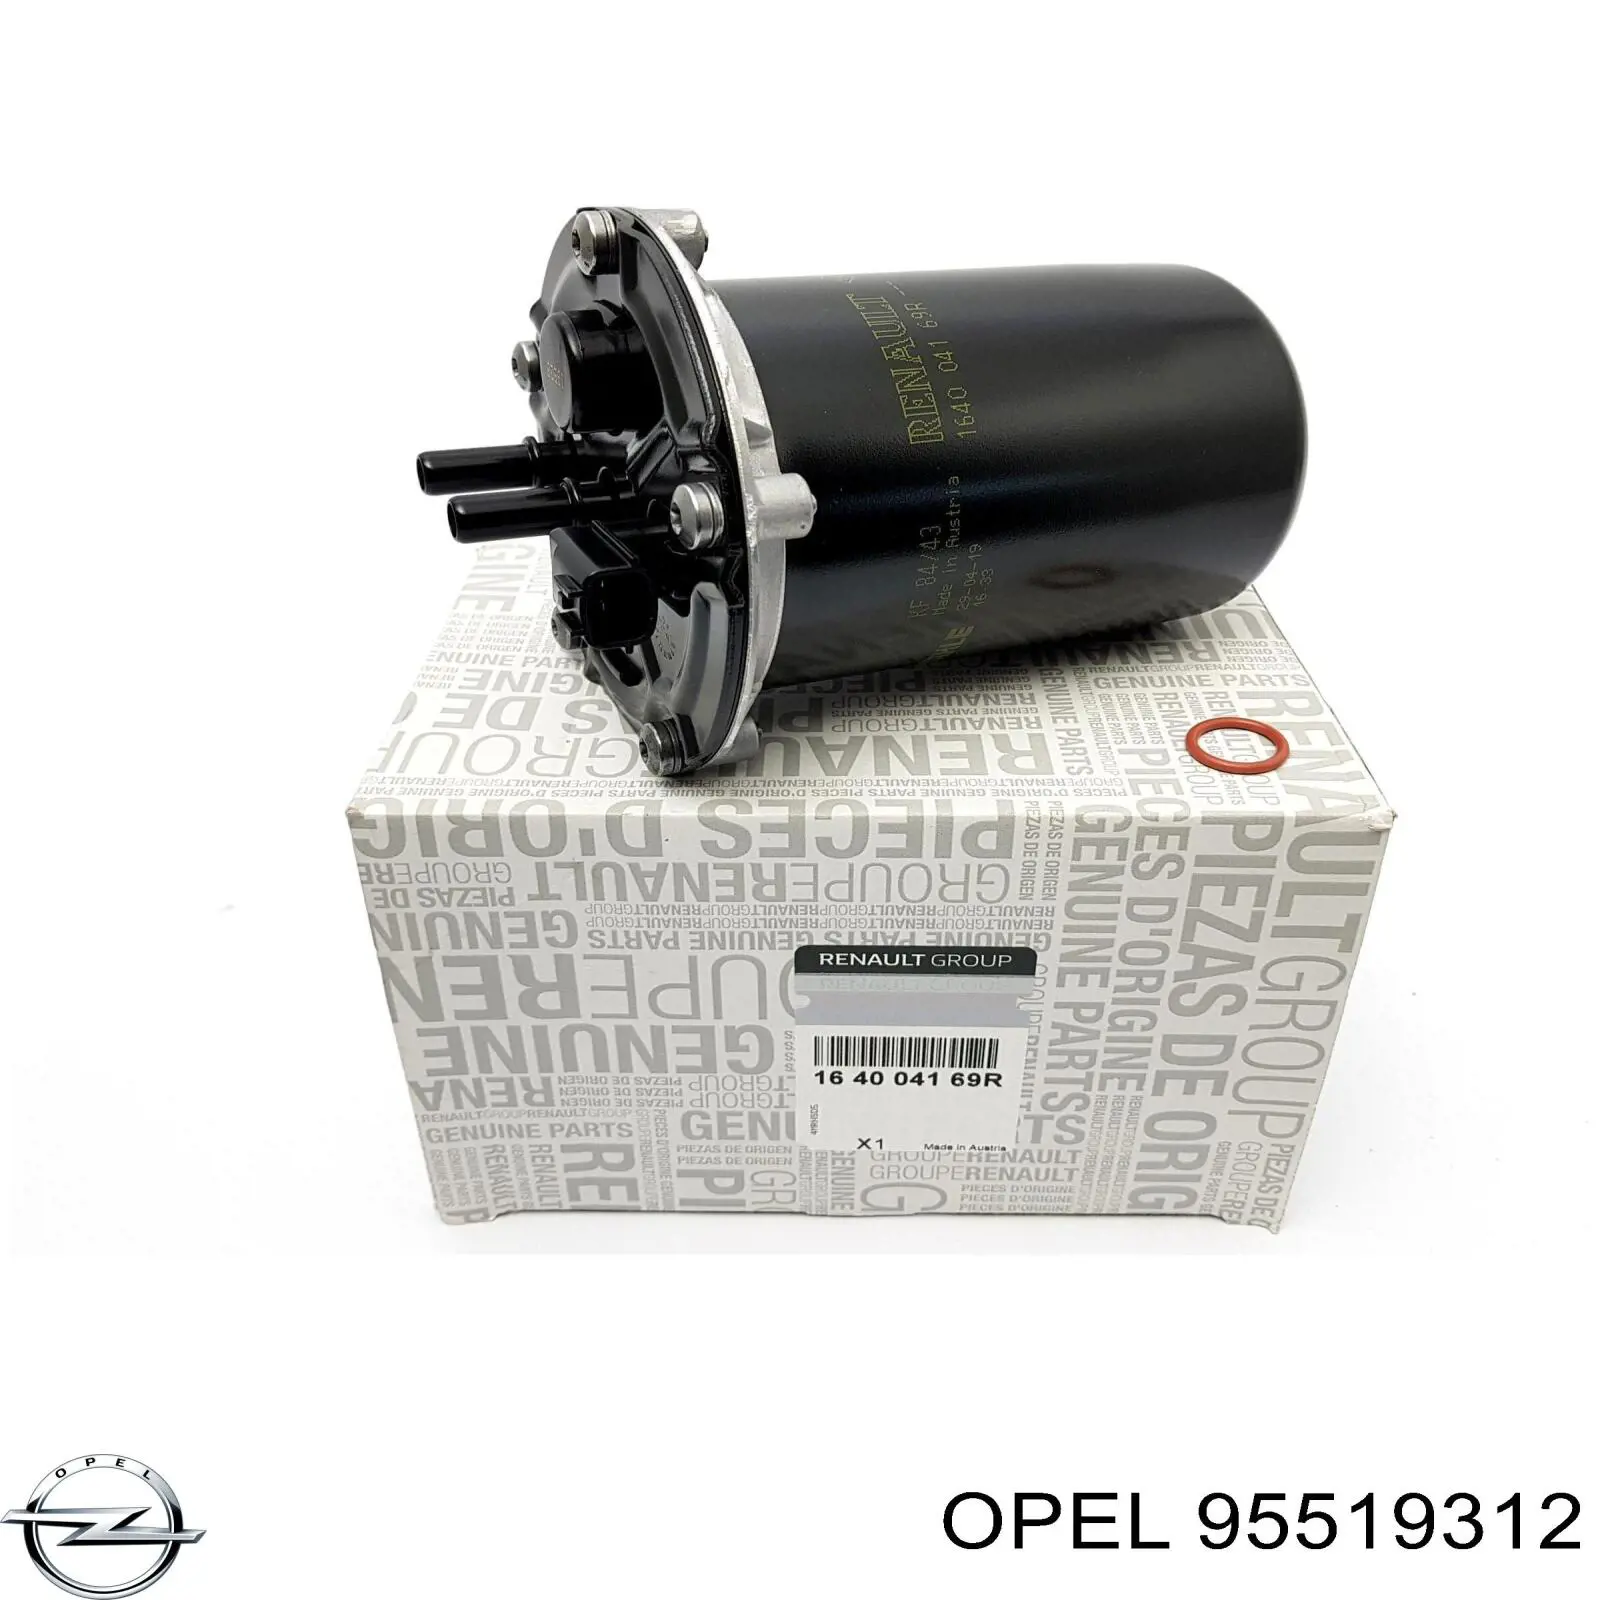 Фильтр топливный Opel 95519312